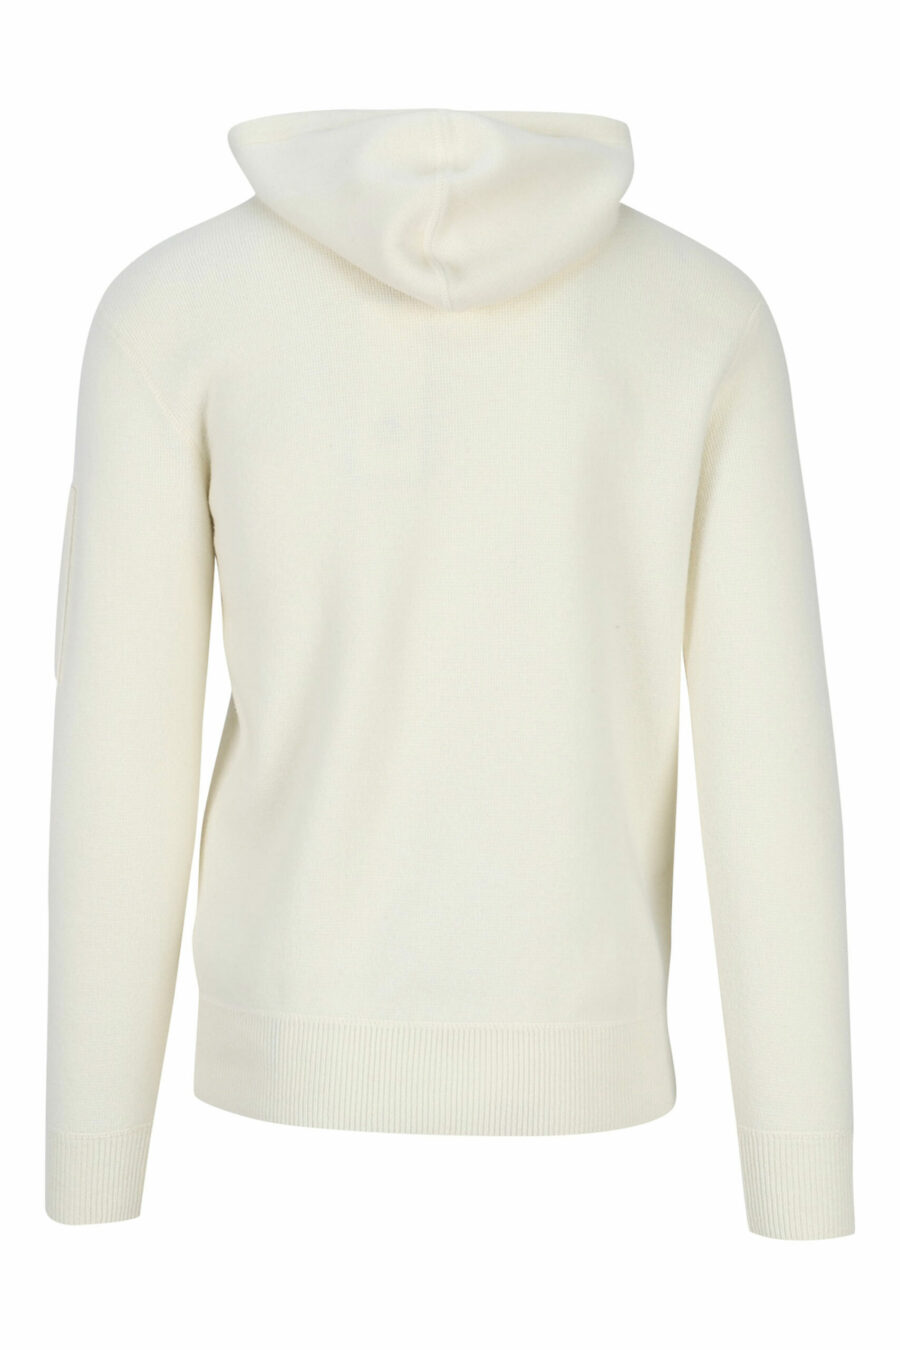 Weißes Kapuzensweatshirt mit seitlichem Linsenlogo - 7620943634068 2 skaliert